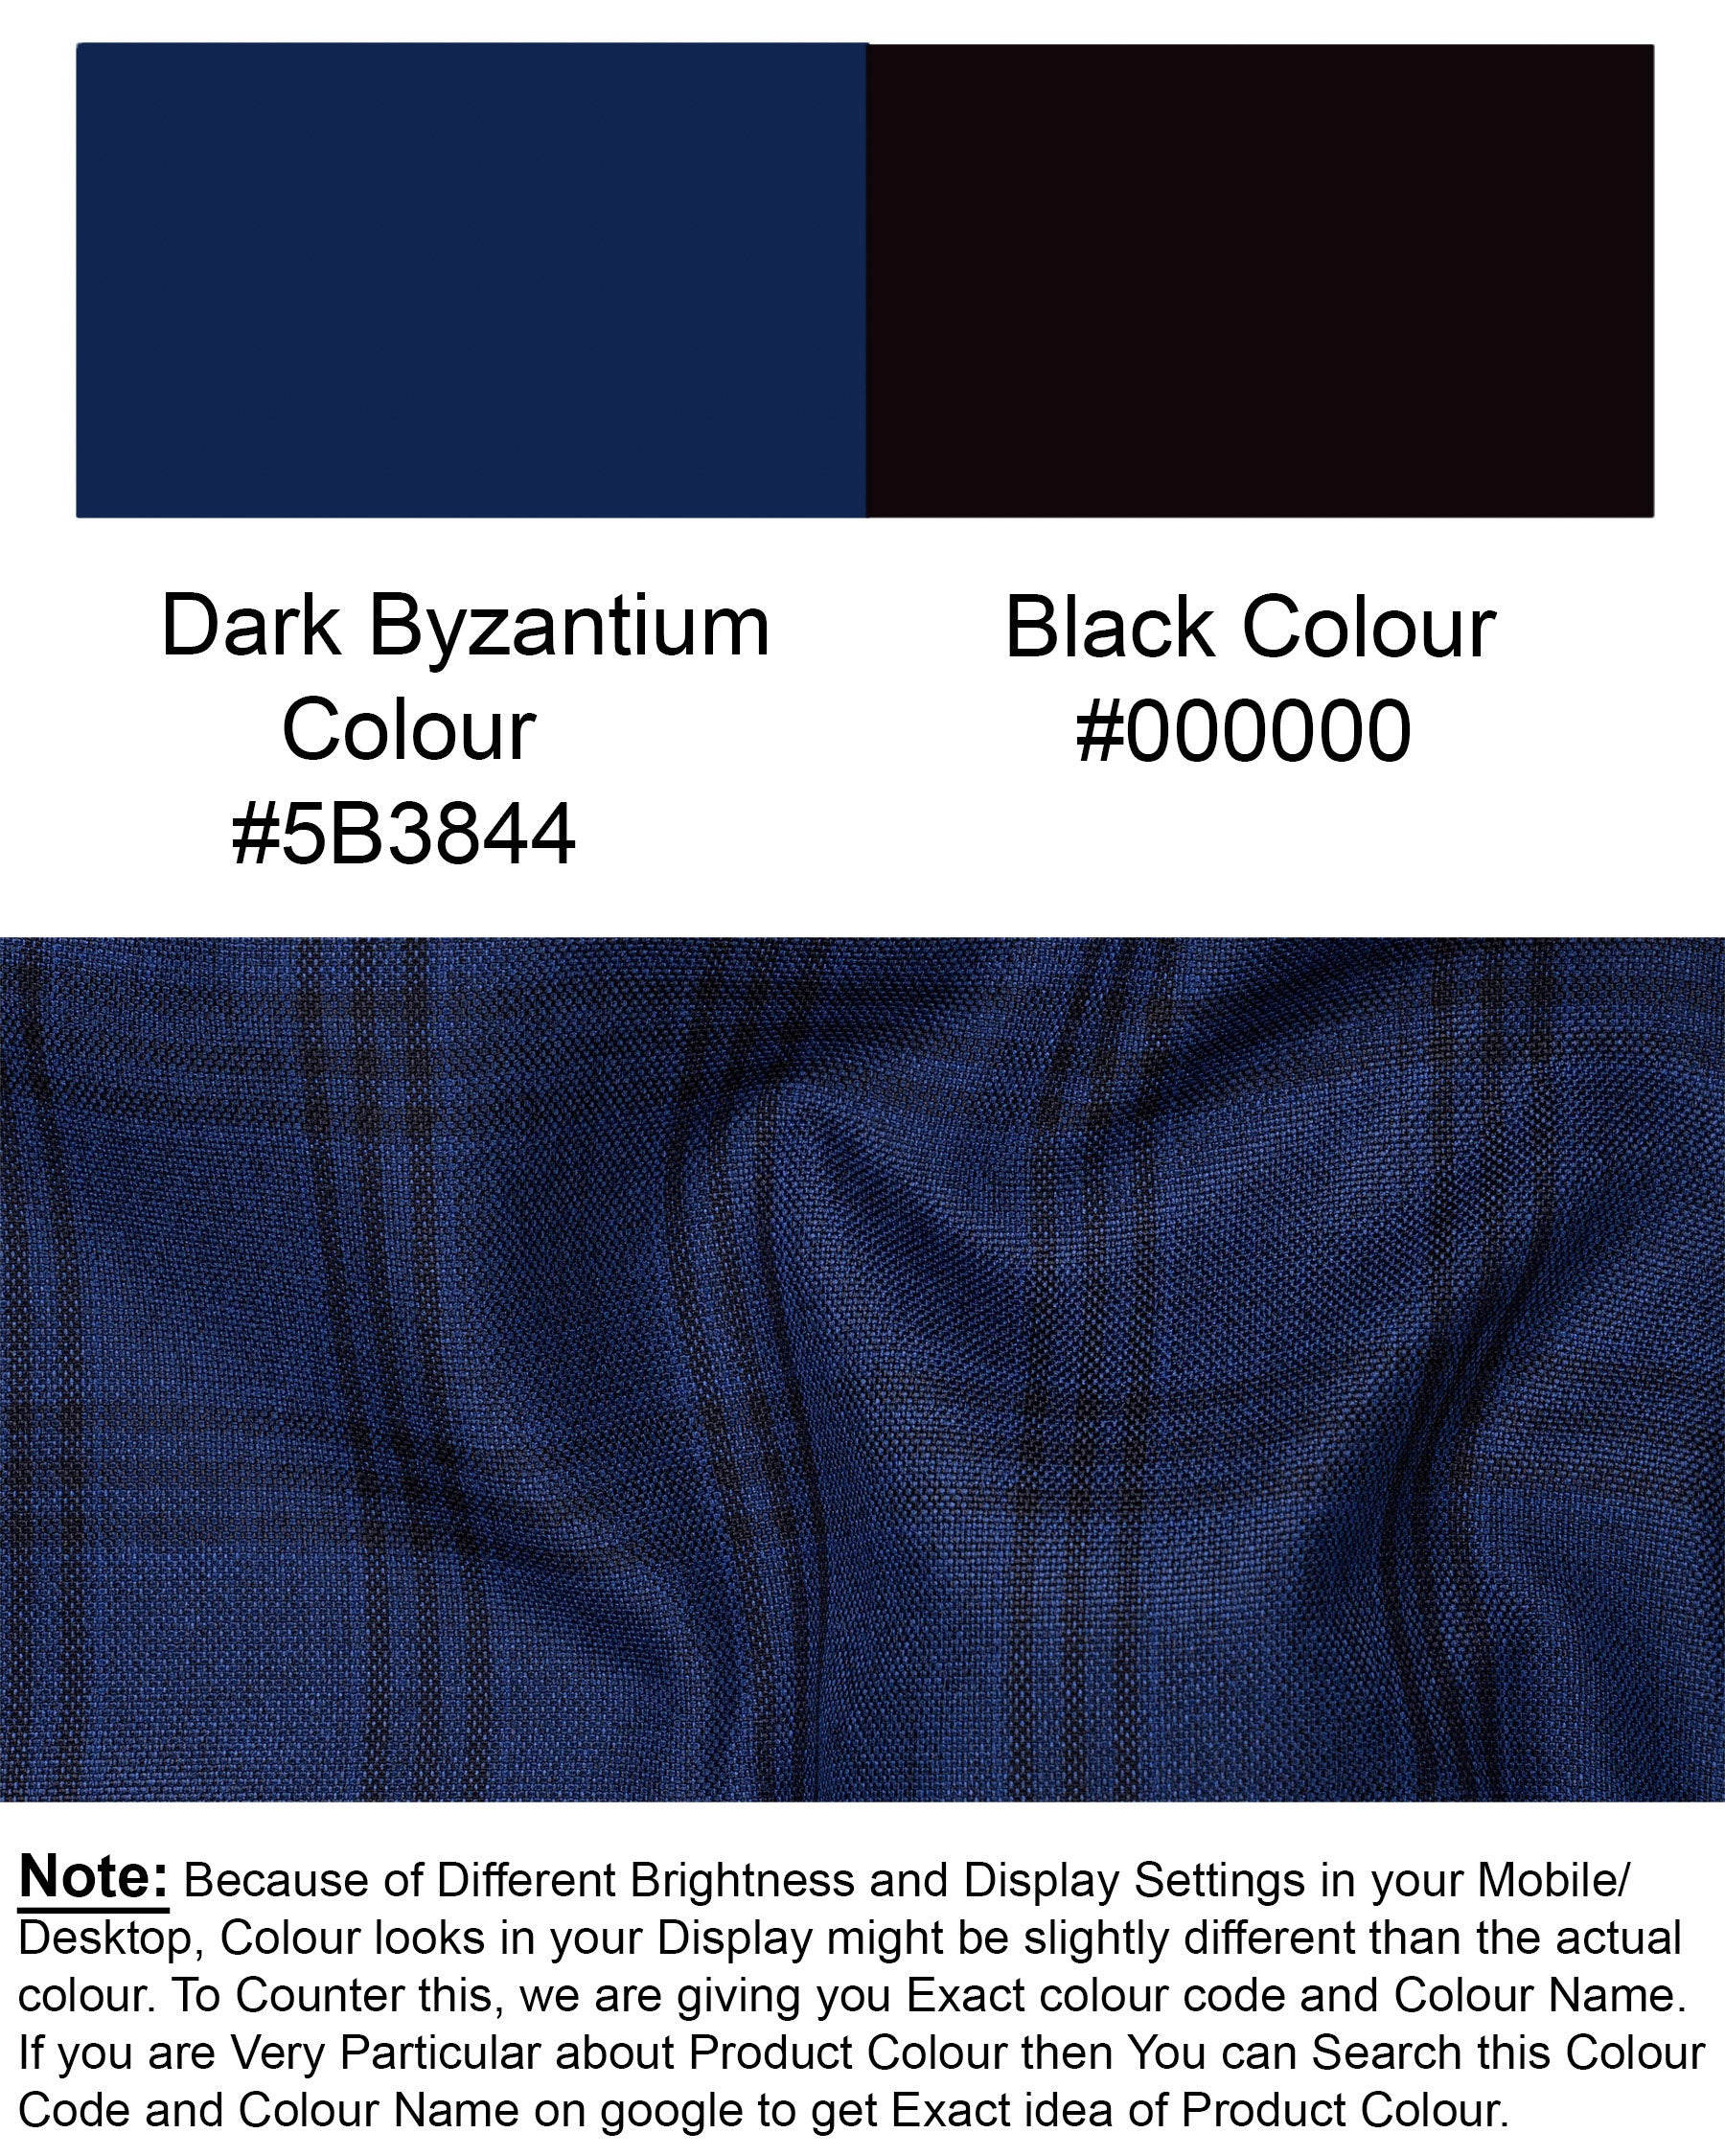 Dark Byzantium Blue Plaid Blazer BL1715-SB-36,BL1715-SB-38,BL1715-SB-40,BL1715-SB-42,BL1715-SB-44,BL1715-SB-46,BL1715-SB-48,BL1715-SB-50,BL1715-SB-52,BL1715-SB-54,BL1715-SB-56,BL1715-SB-58,BL1715-SB-60